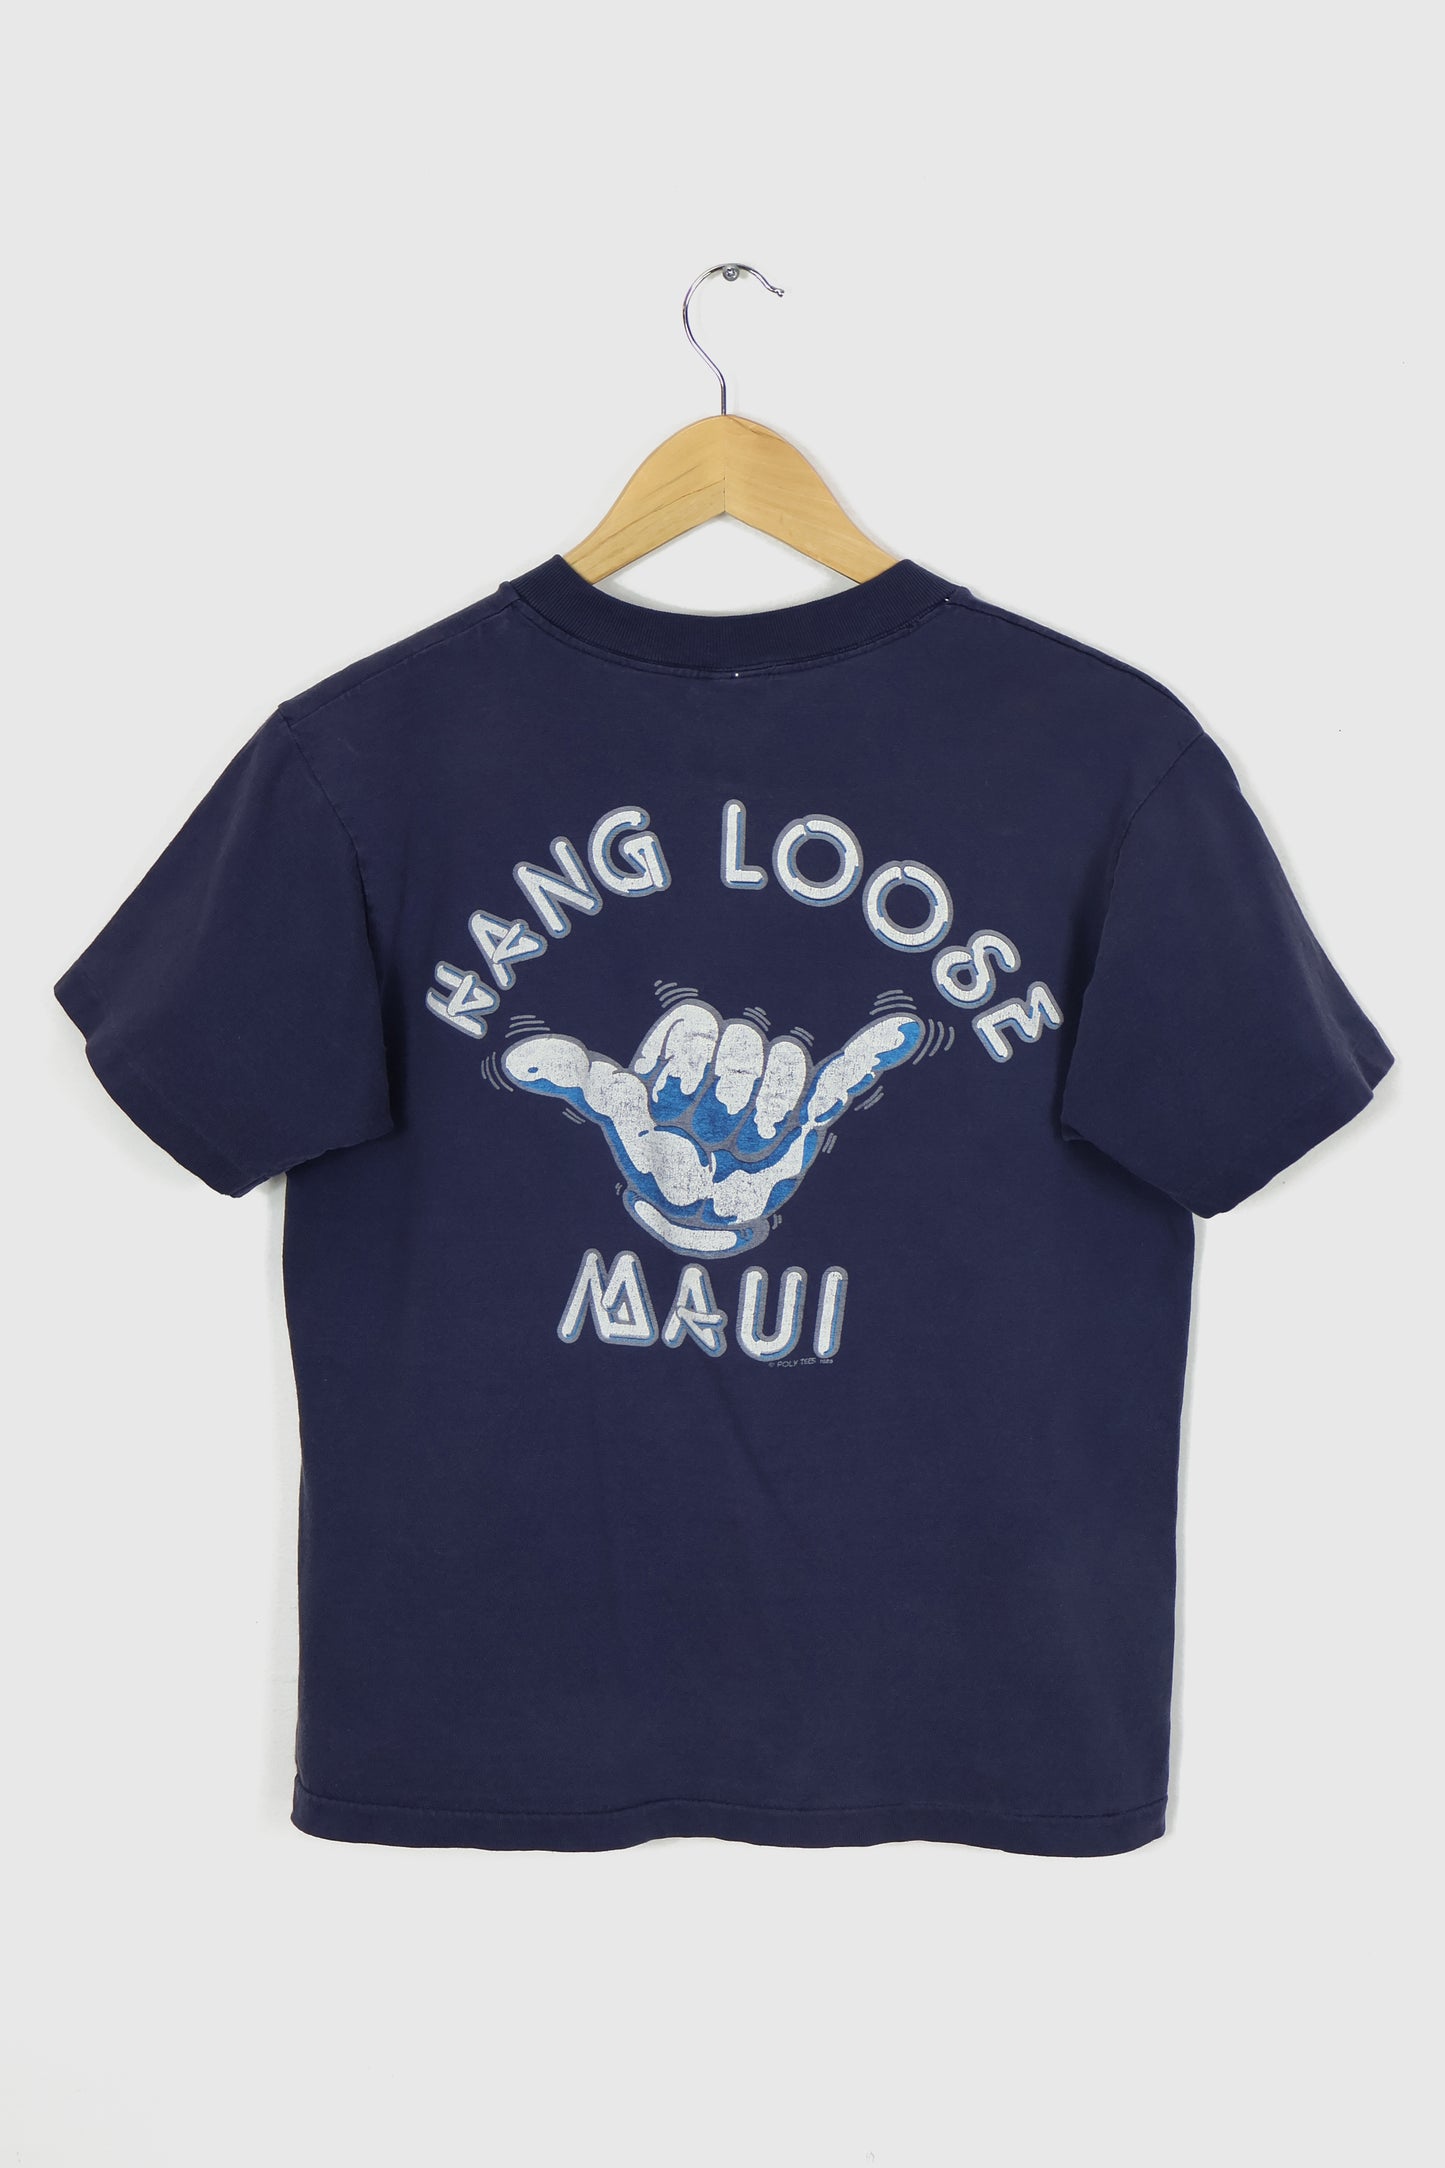 Vintage Hang Loose Maui Tee